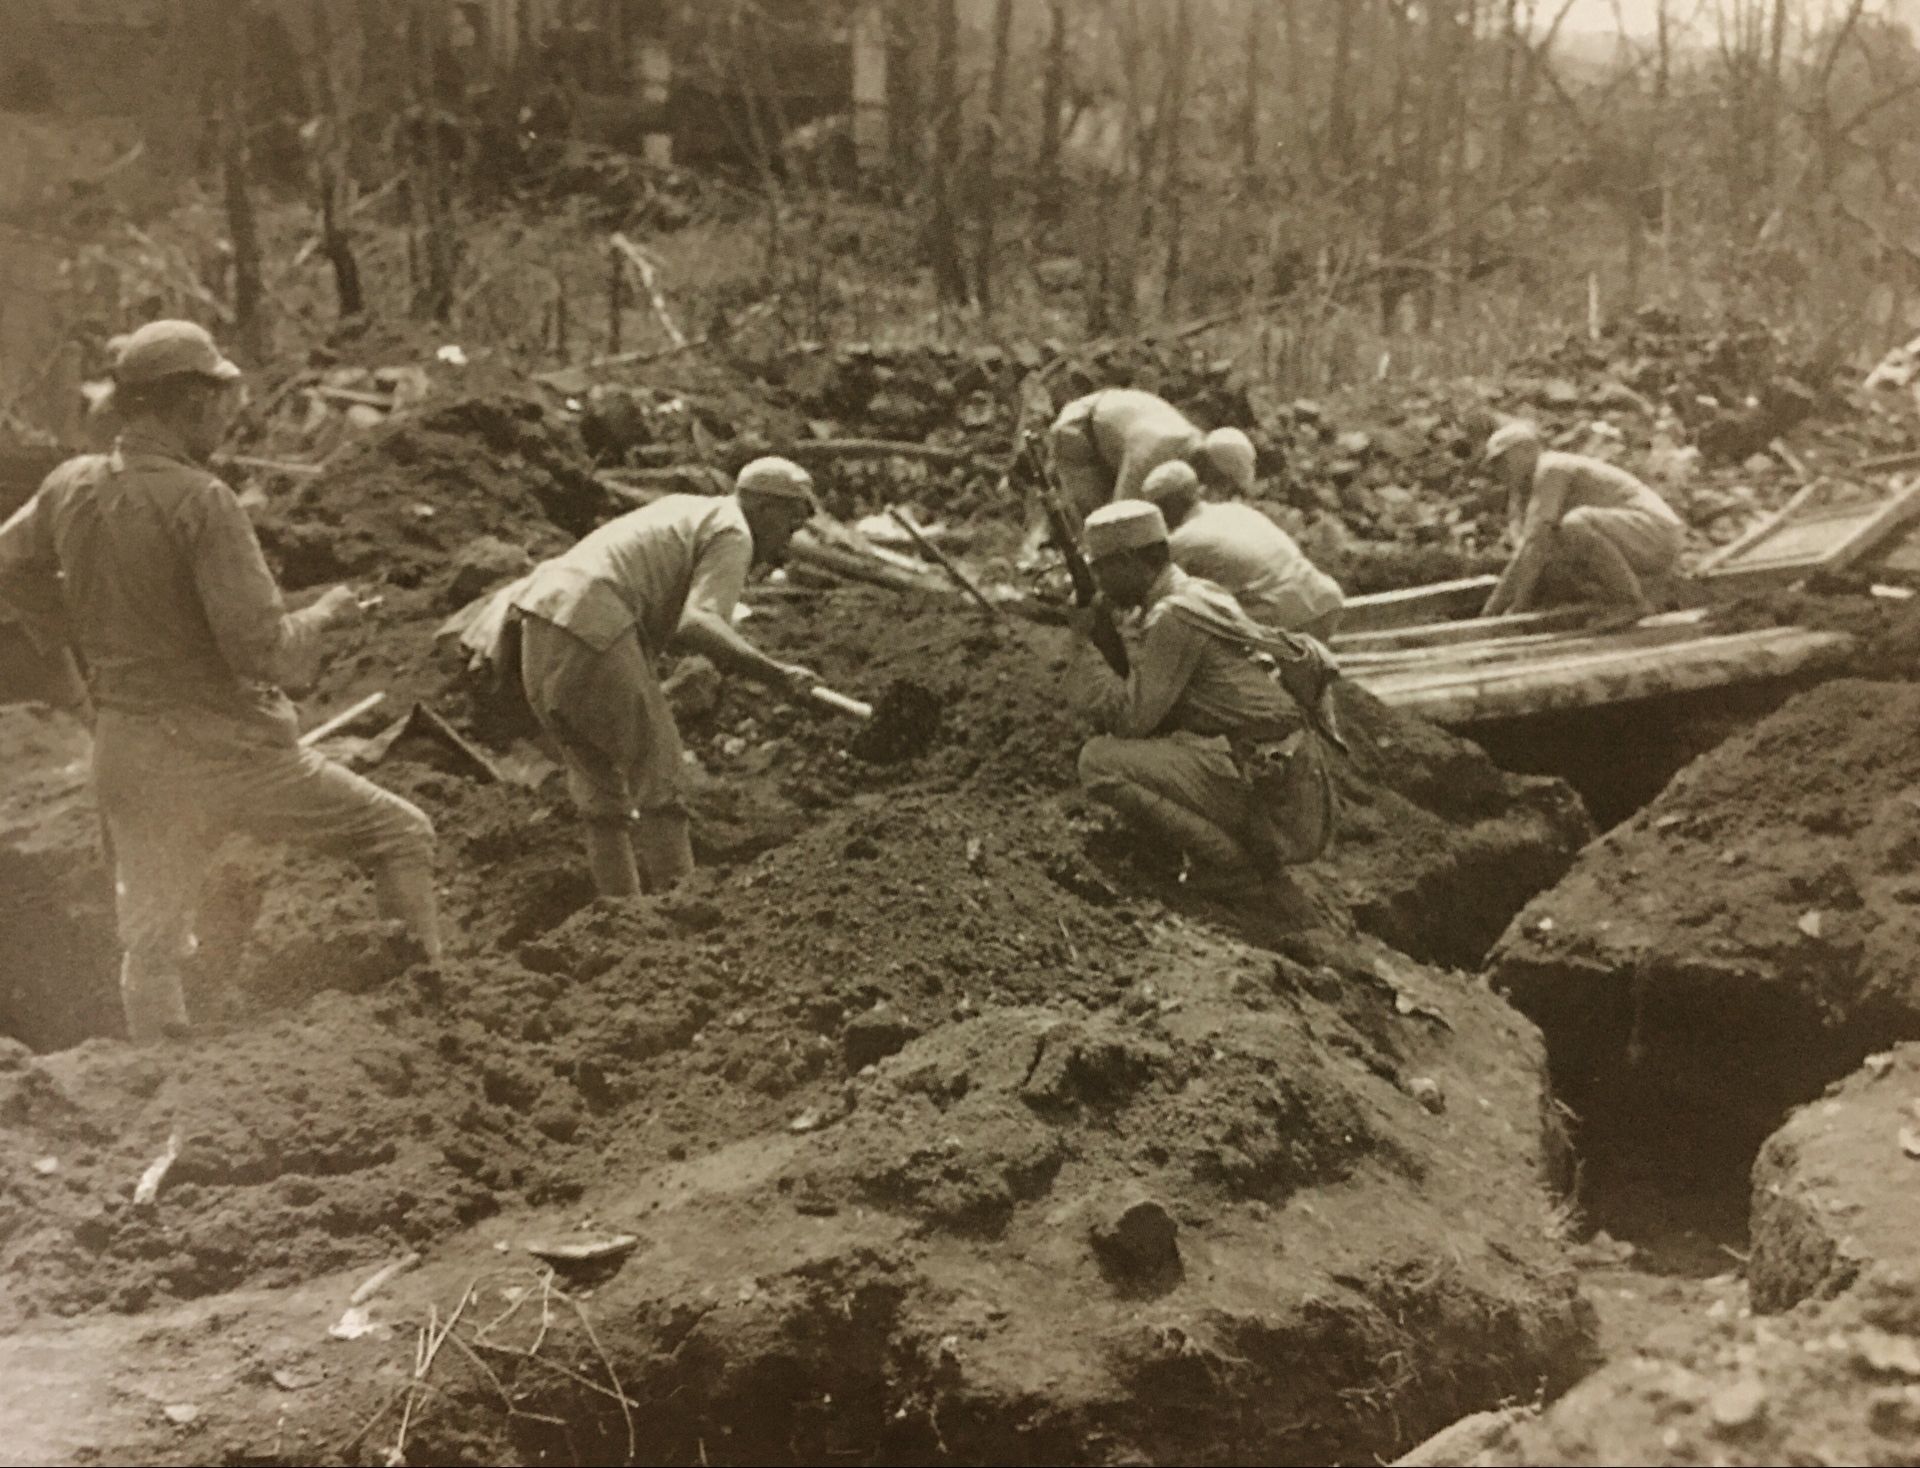 照片为抗战时期远征军在腾冲战役挖掘战壕,腾冲战役发生于1944年5月11